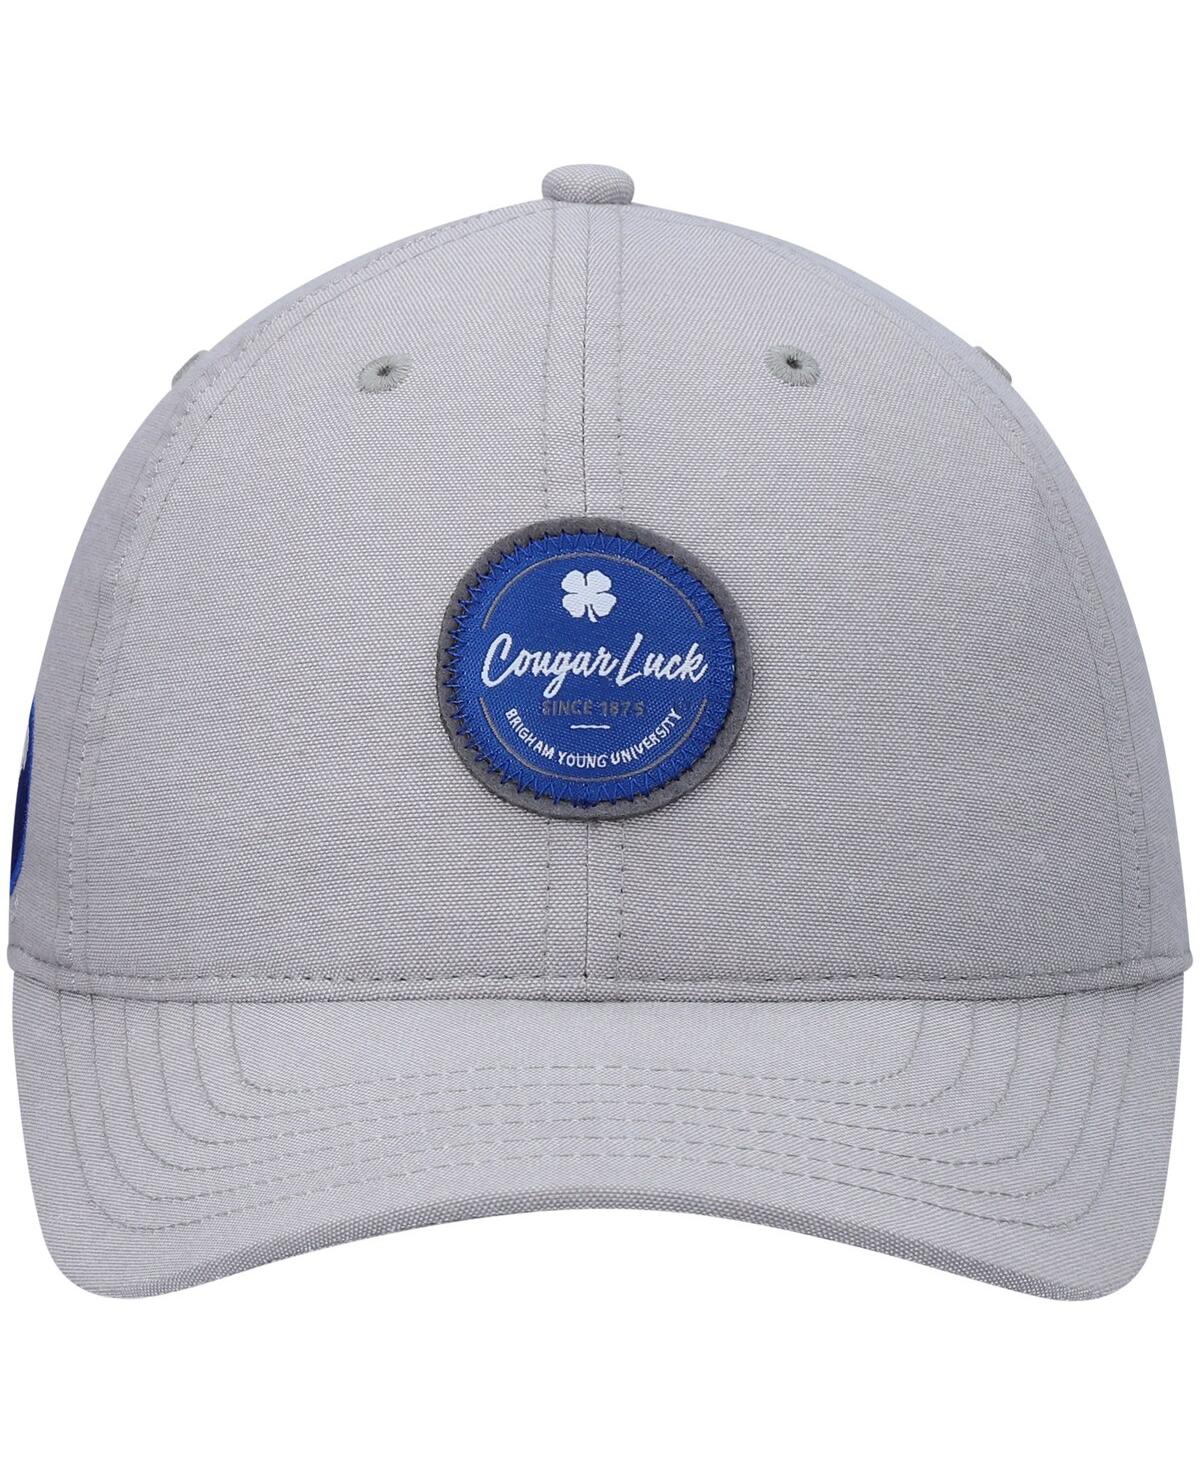 Shop Black Clover Men's Gray Byu Cougars Oxford Circle Adjustable Hat